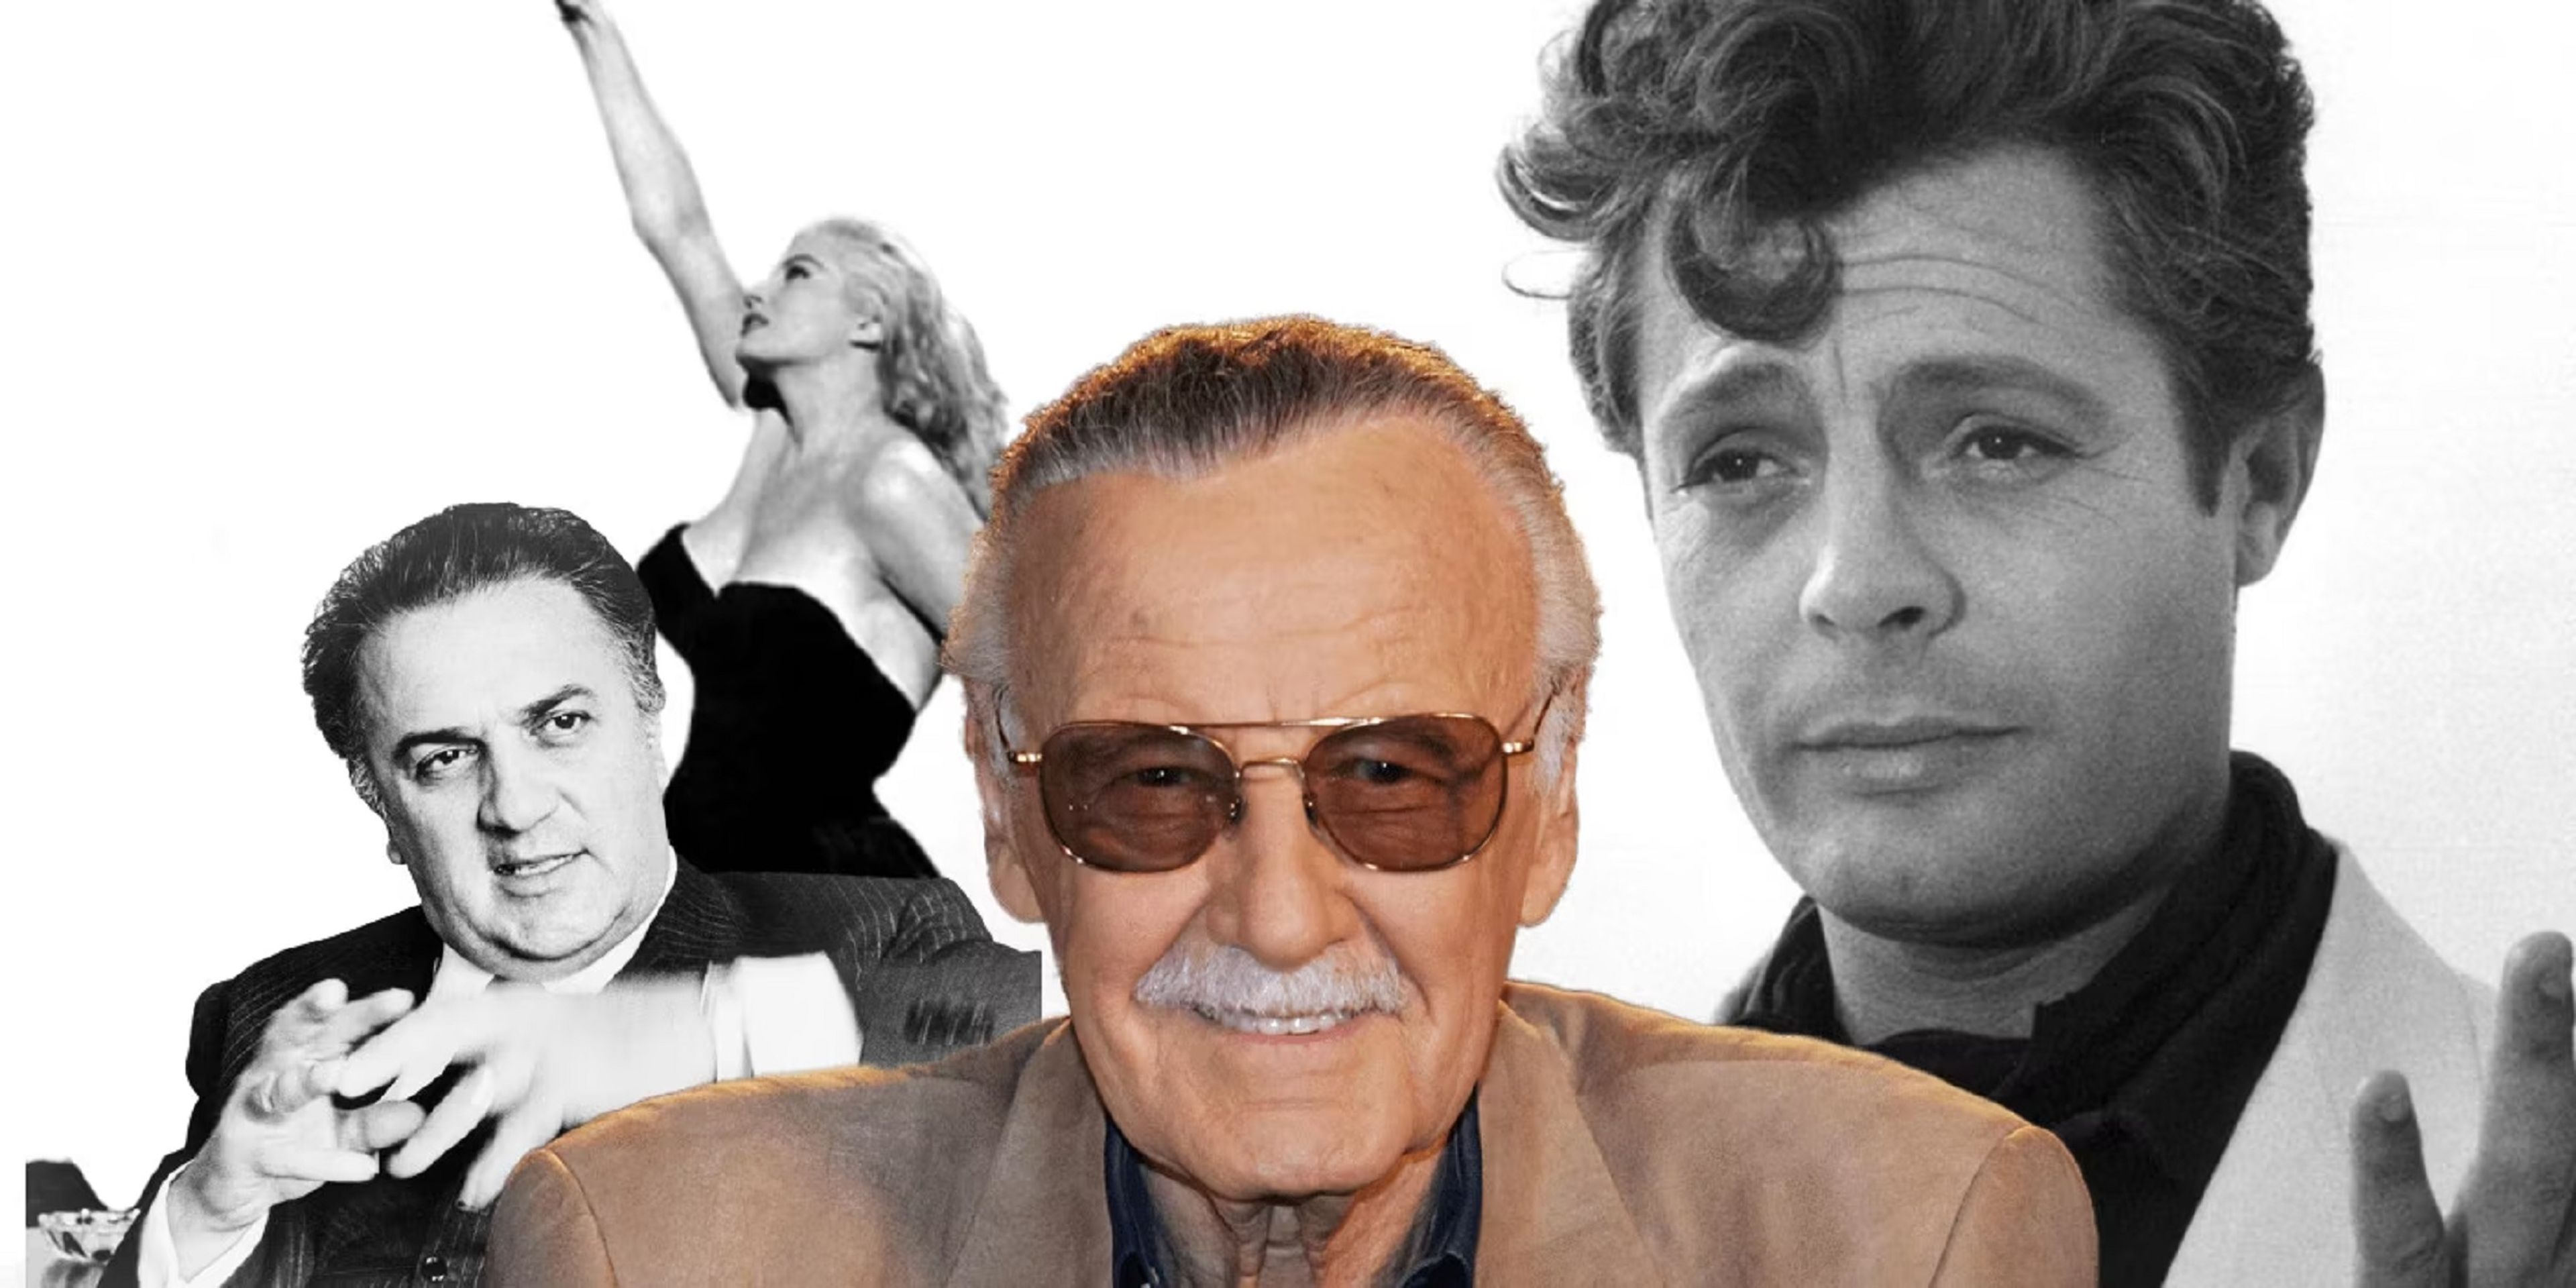 La amista entre Stan Lee y Federico Fellini